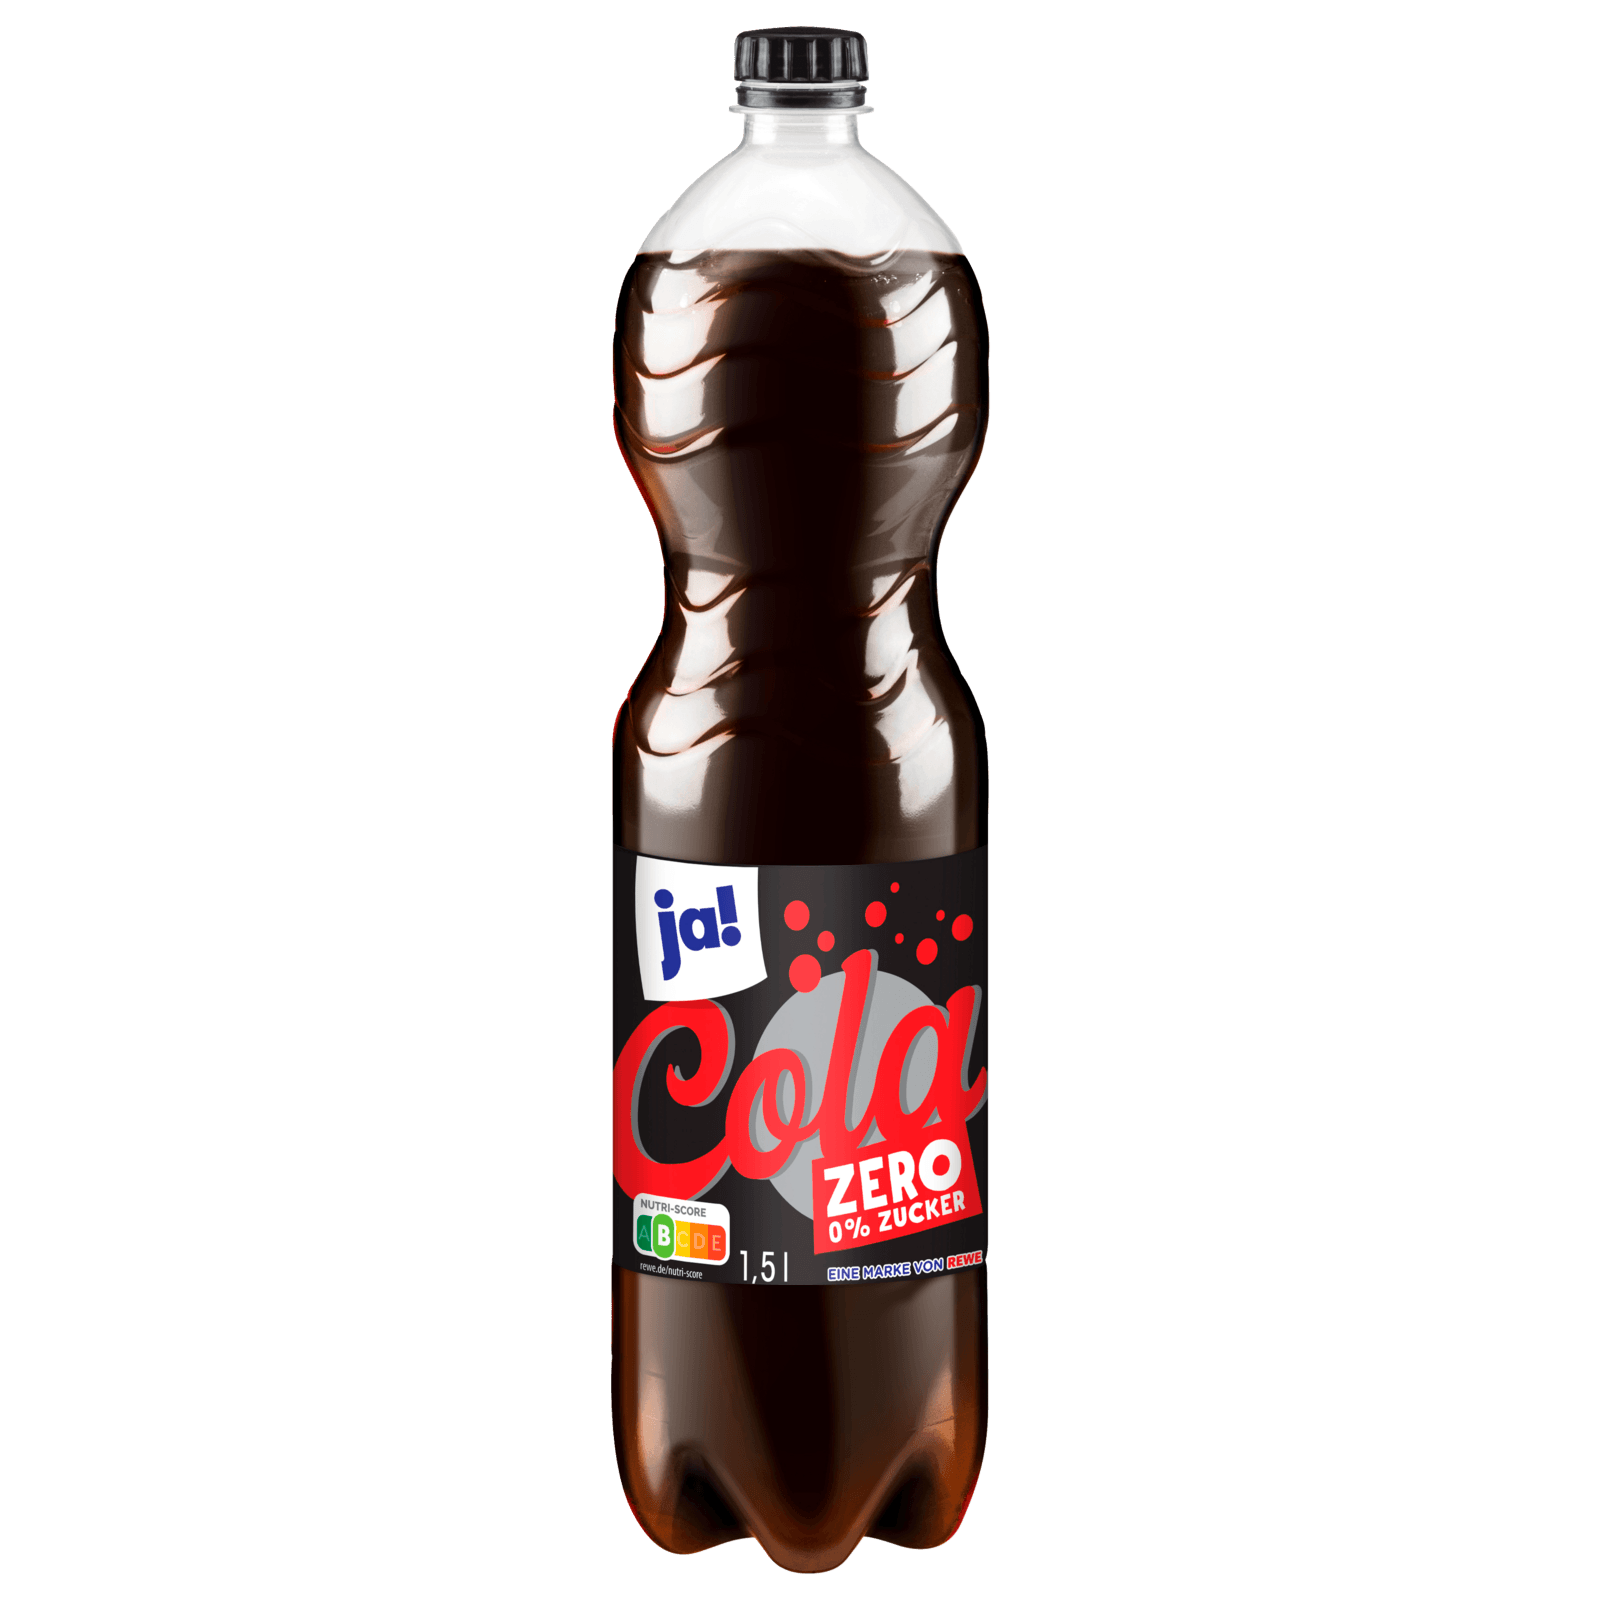 Afri Cola 0,33l bei REWE online bestellen! REWE.de